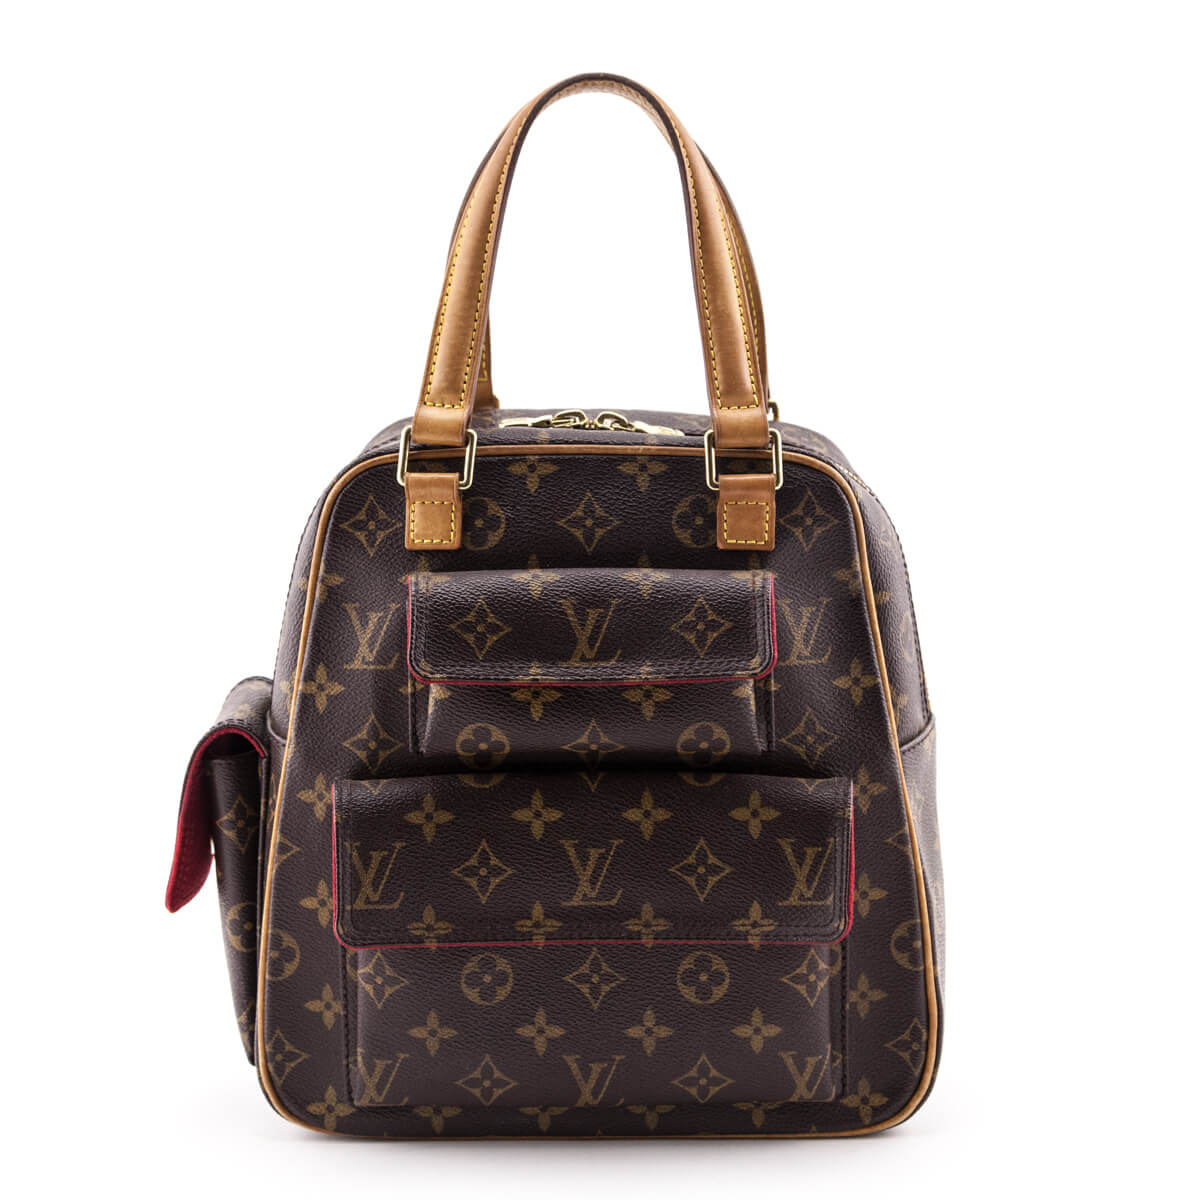 Authentic Luxury Designer Handbags  Bags  LXR Canada